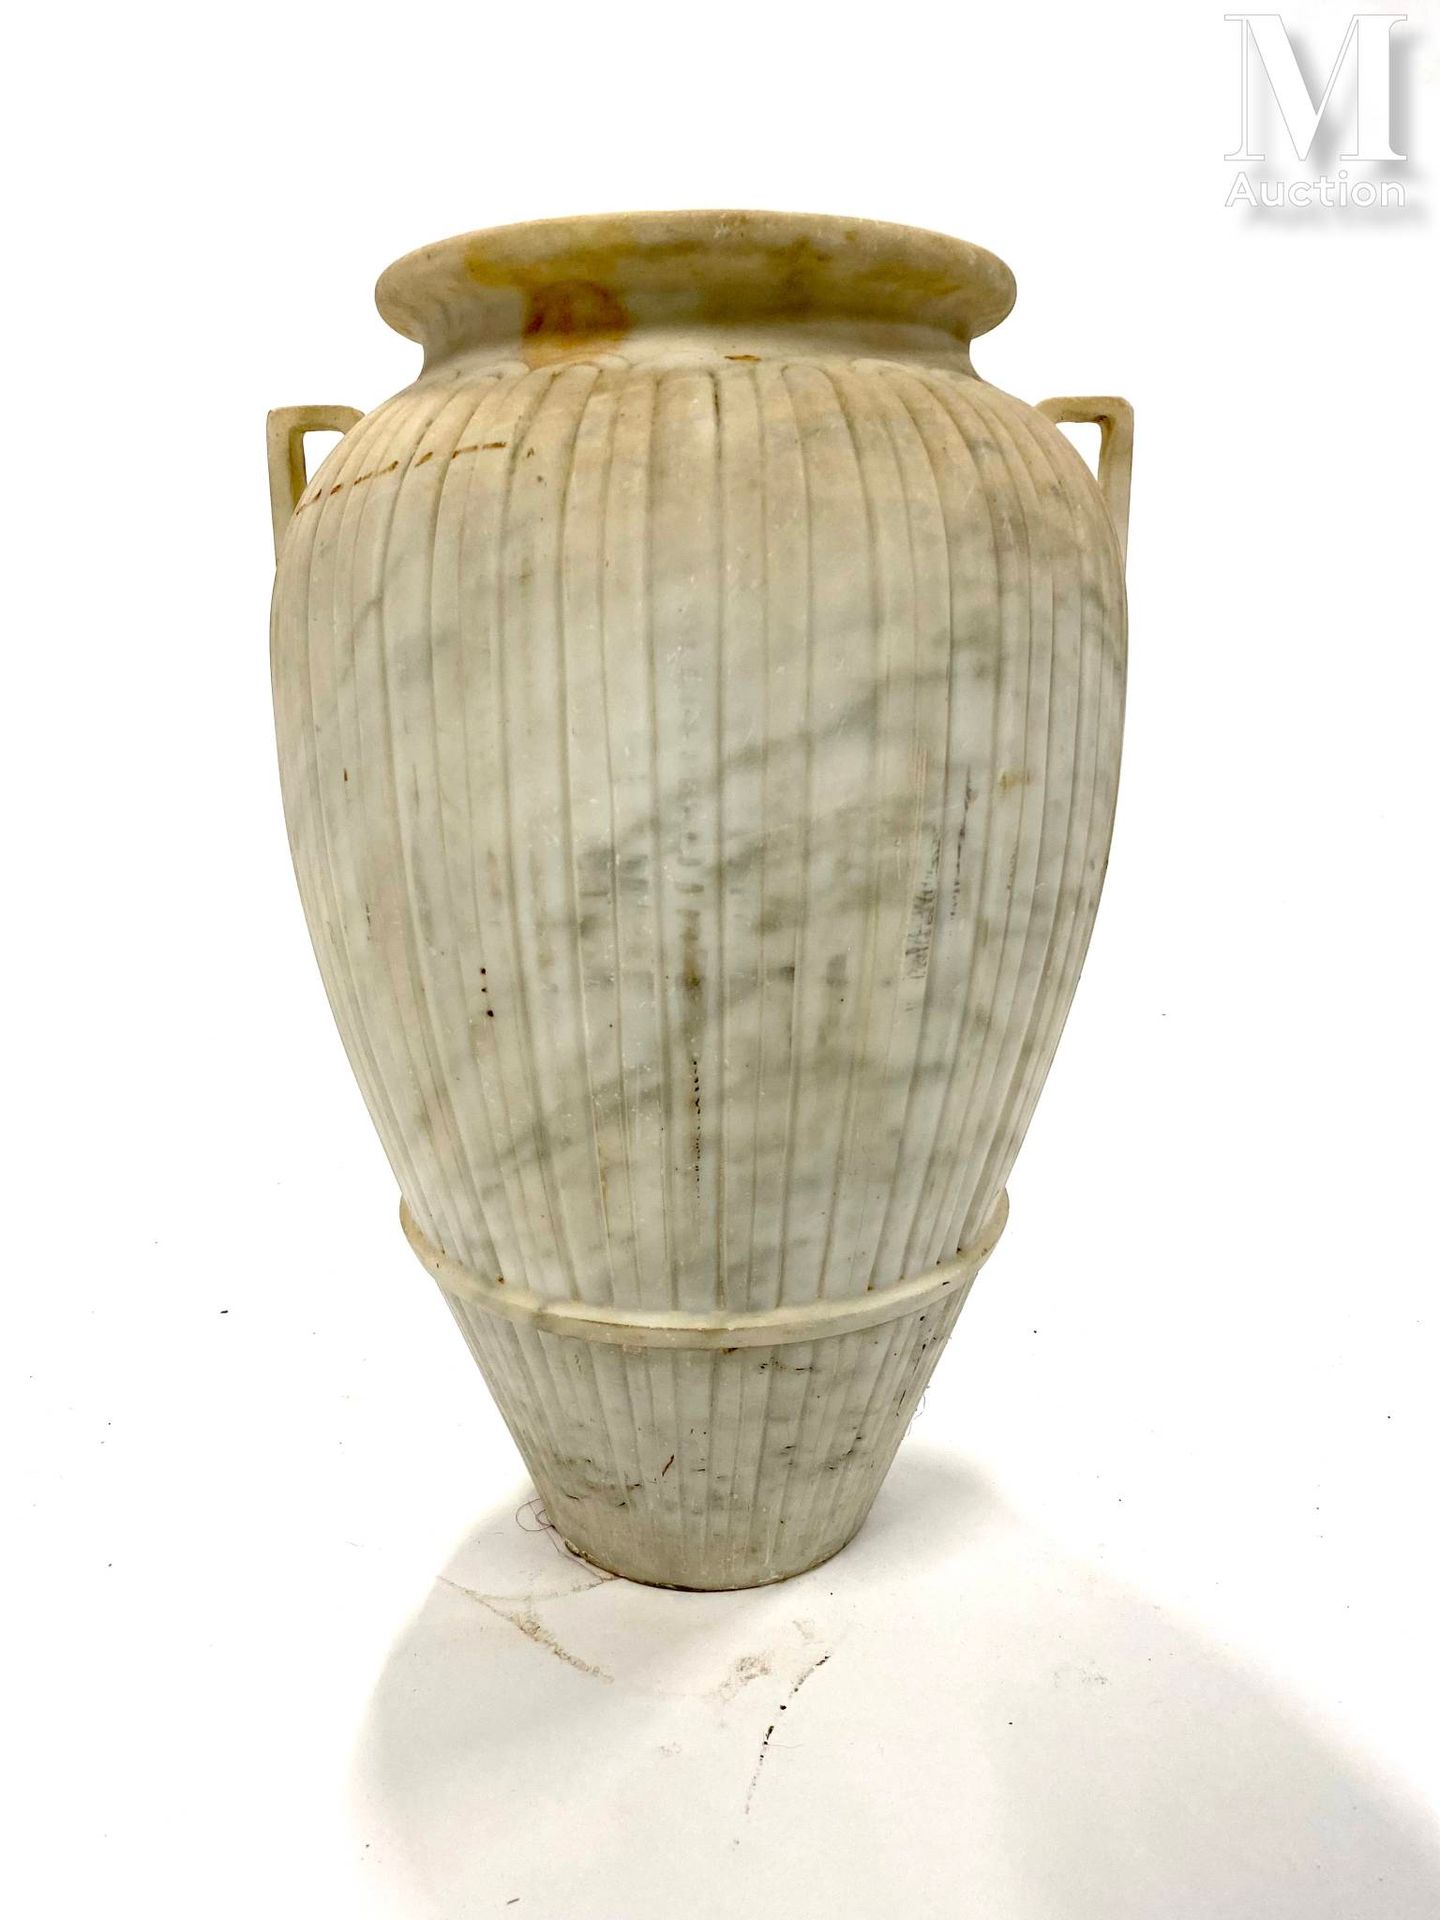 Vase en marbre con due maniglie, il fusto con decorazioni a gadroon
H: 48 cm.